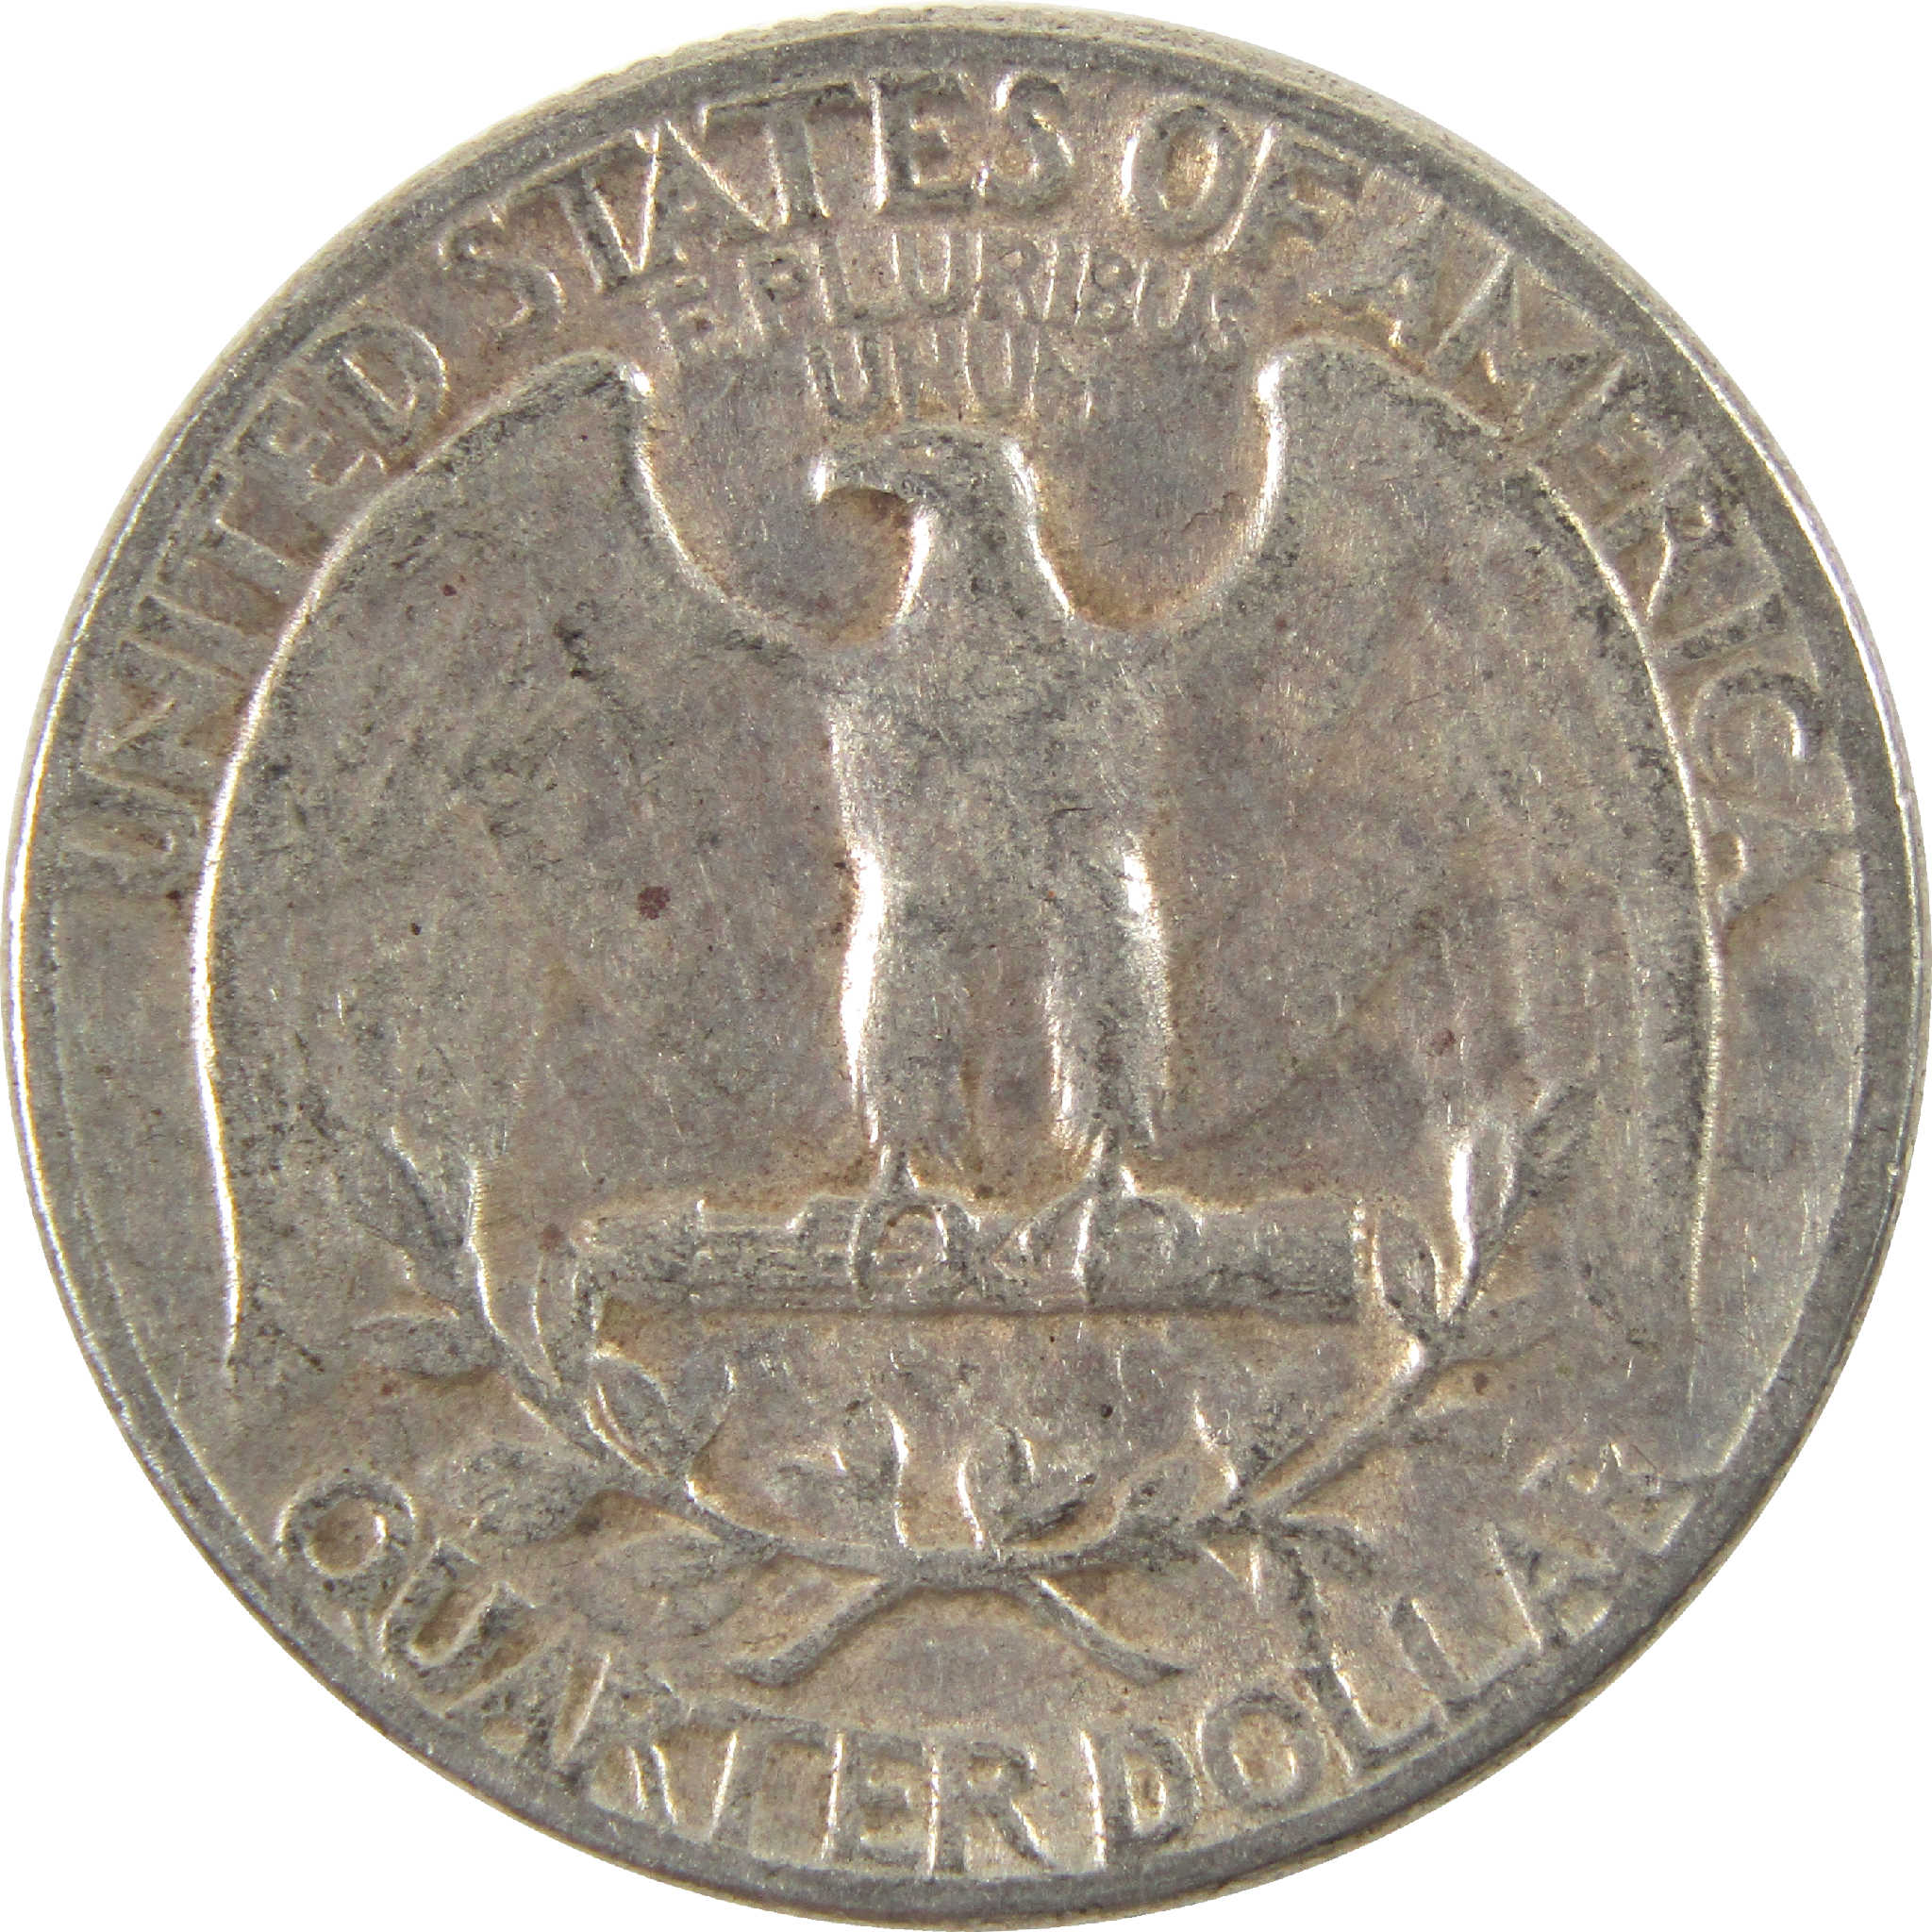 1945 Washington Quarter VF Very Fine Silver 25c Coin